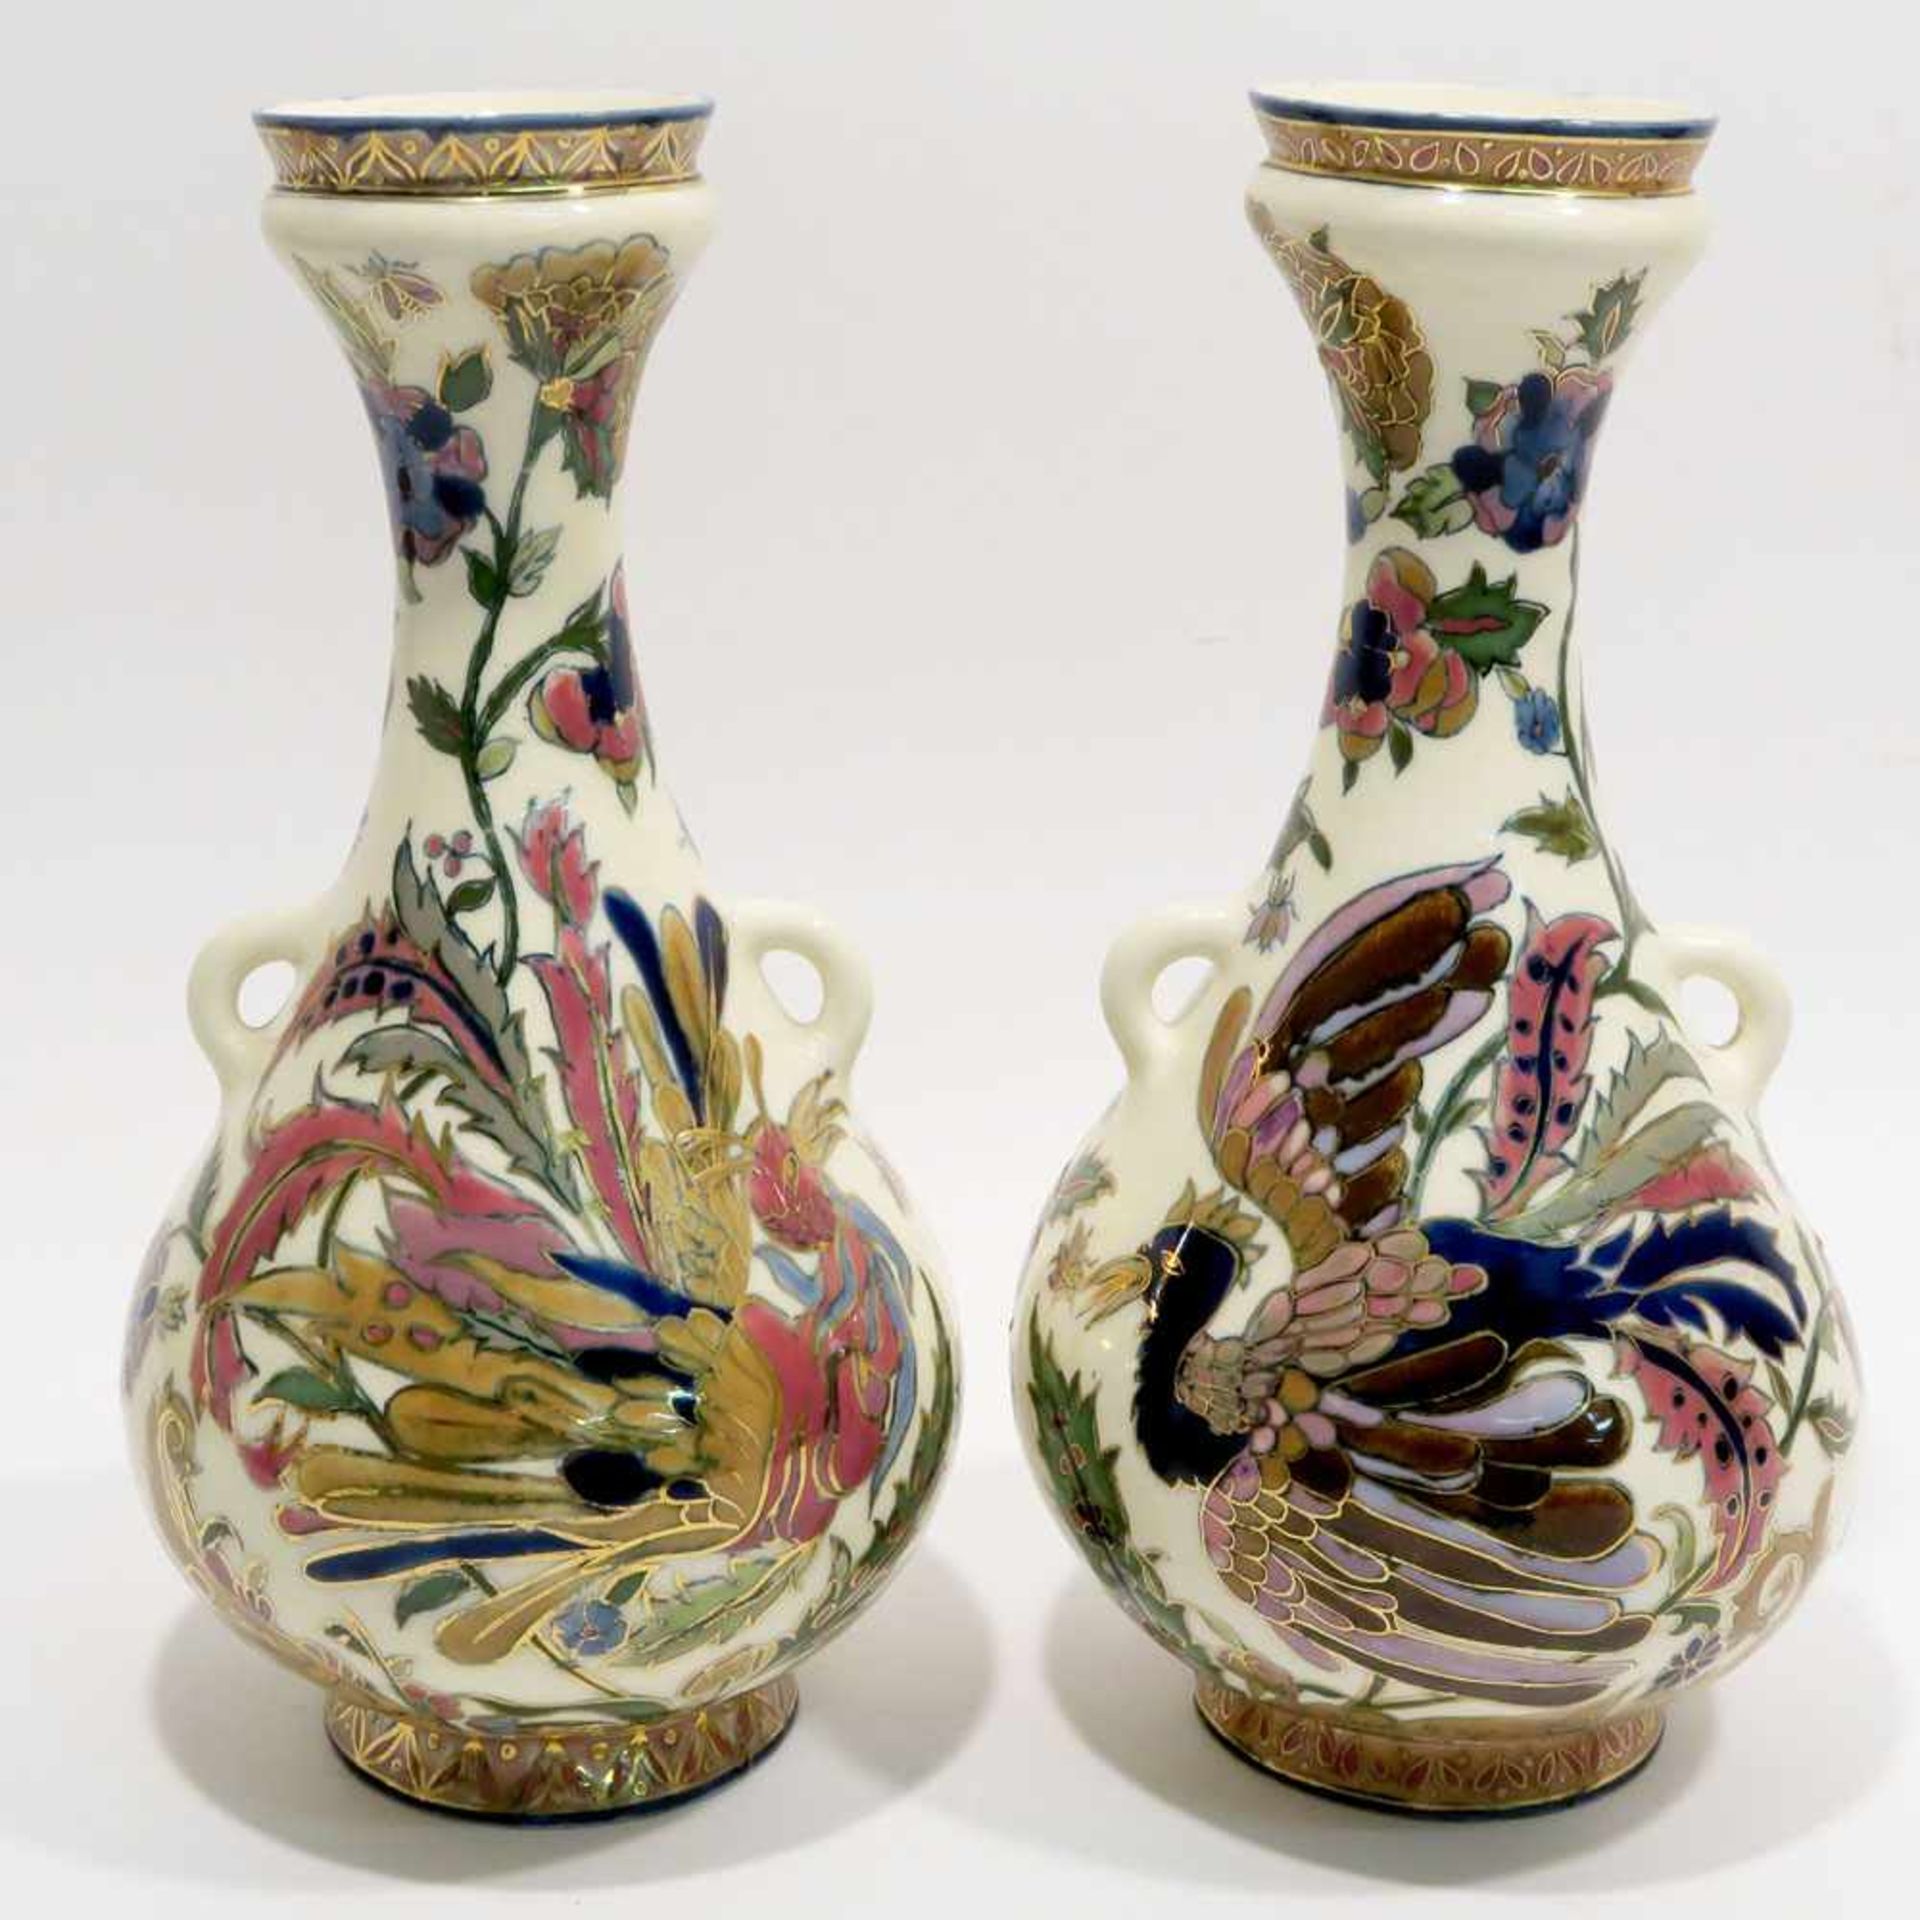 Ein Paar VasenZsolnay/Pécs, letztes Viertel 19. Jh. Keramik, weiß glasiert, polychromer, - Bild 2 aus 2